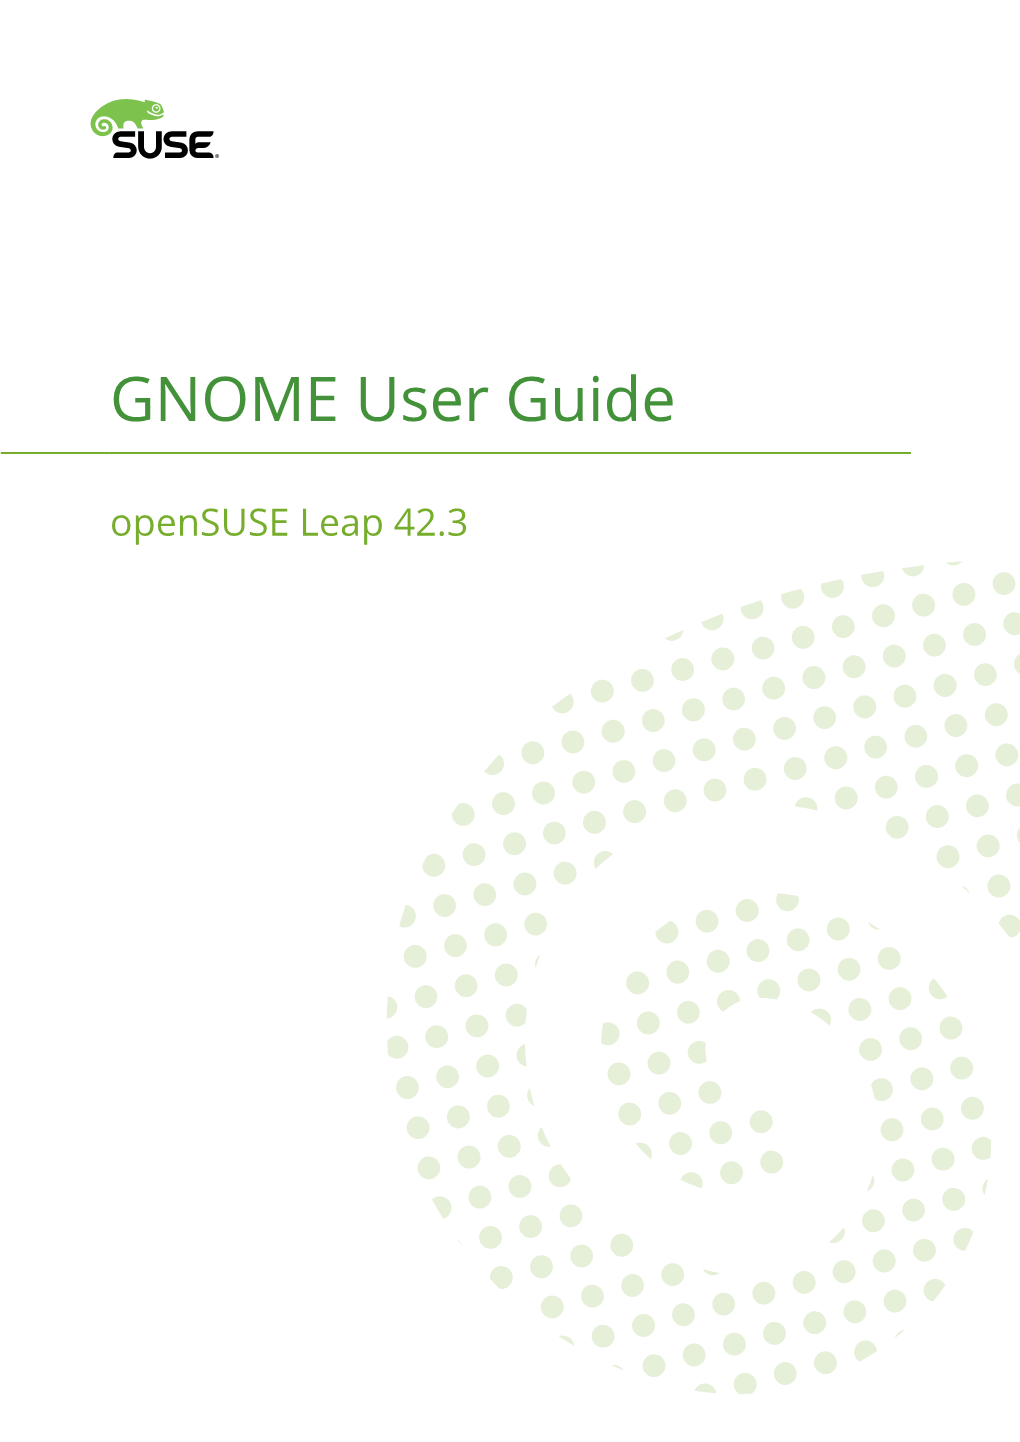 GNOME User Guide Opensuse Leap 42.3 GNOME User Guide Opensuse Leap 42.3